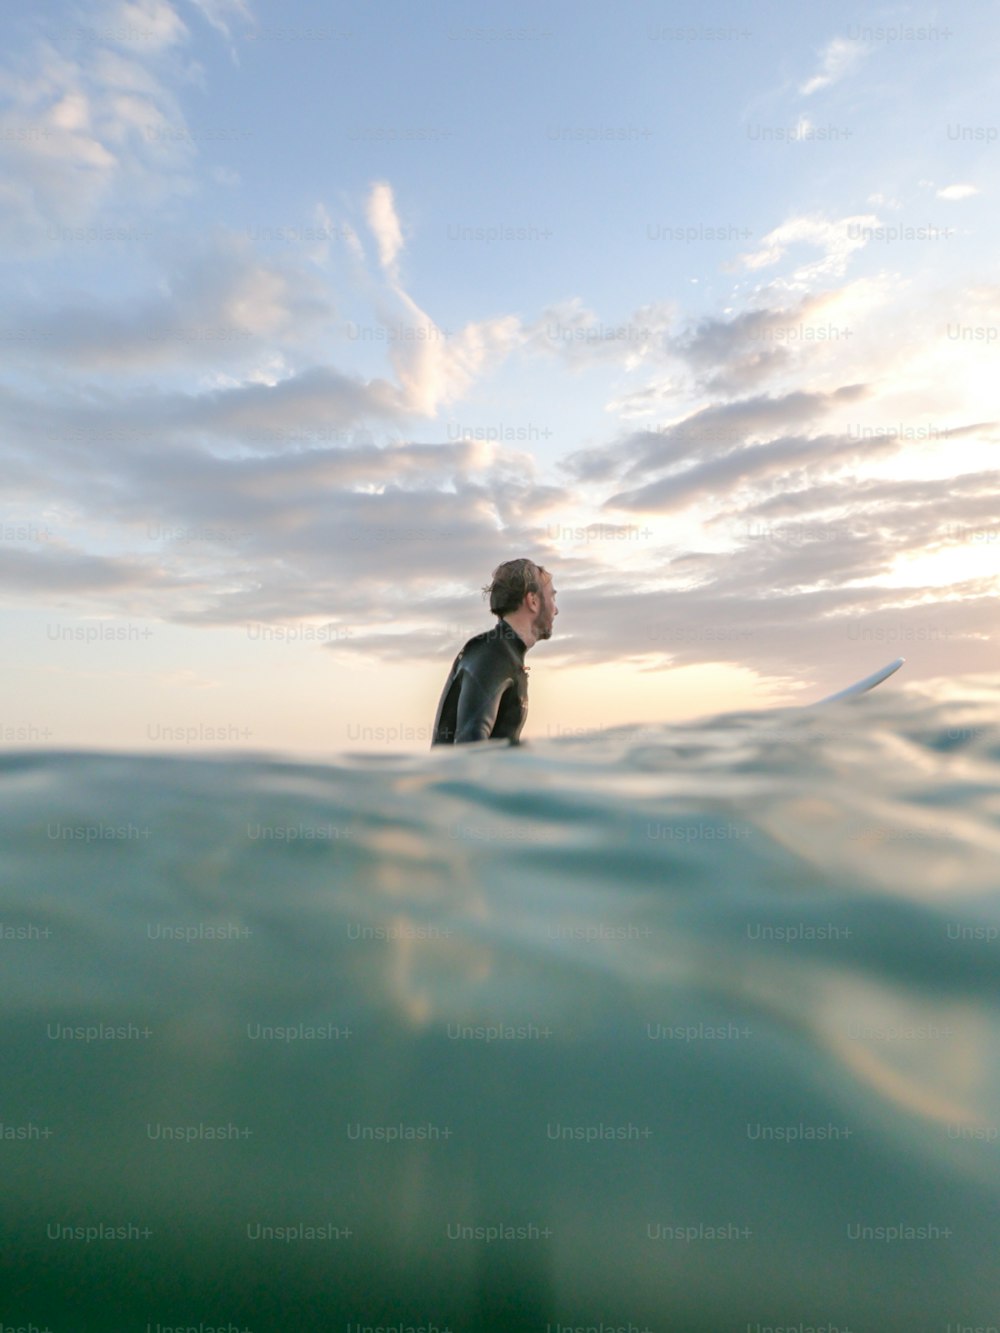 ein mann in einem neoprenanzug steht auf einem surfbrett im meer